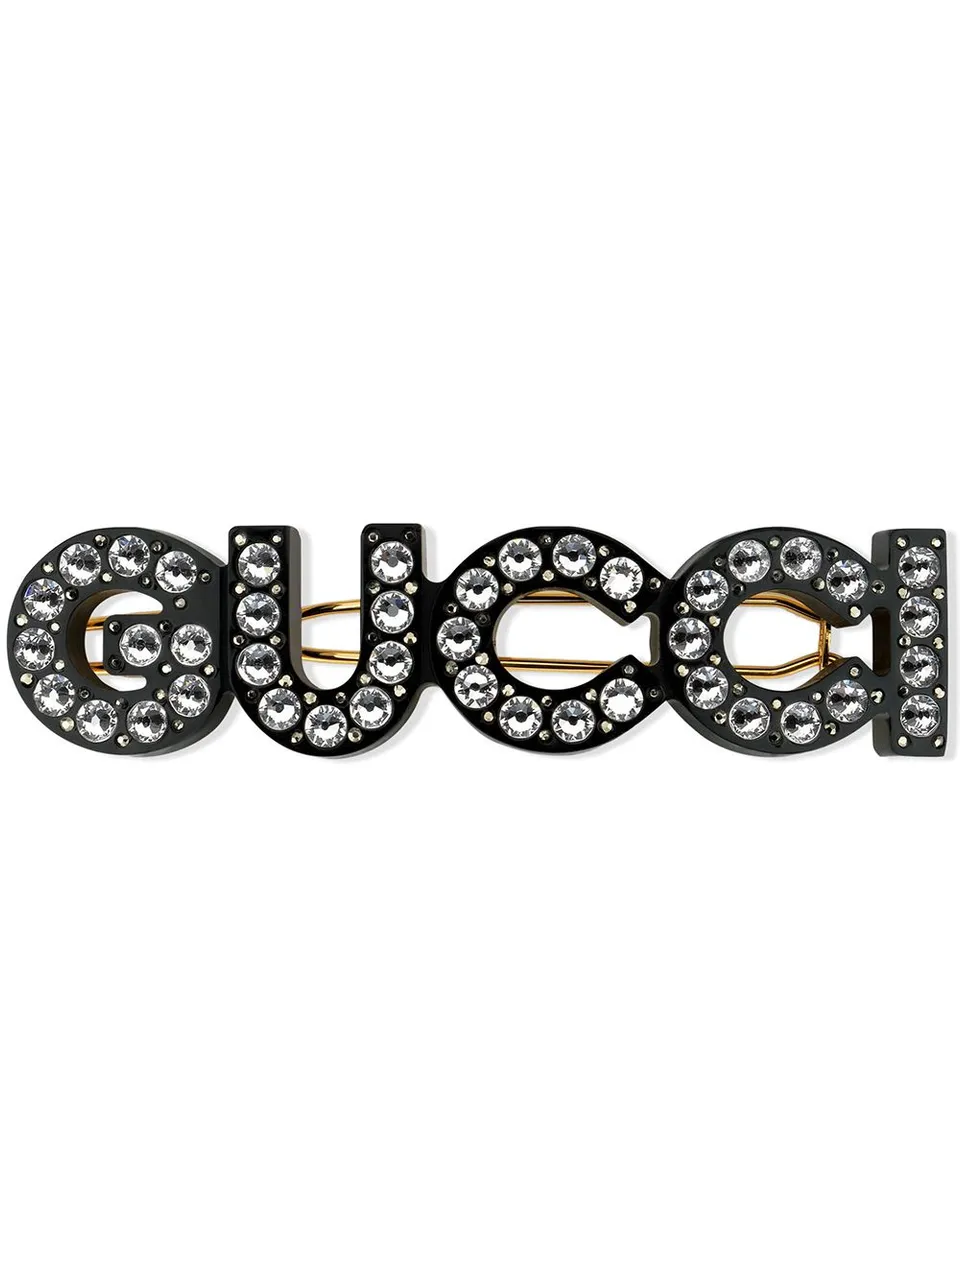 Gucci Haarspange mit Kristallen - Preise vergleichen